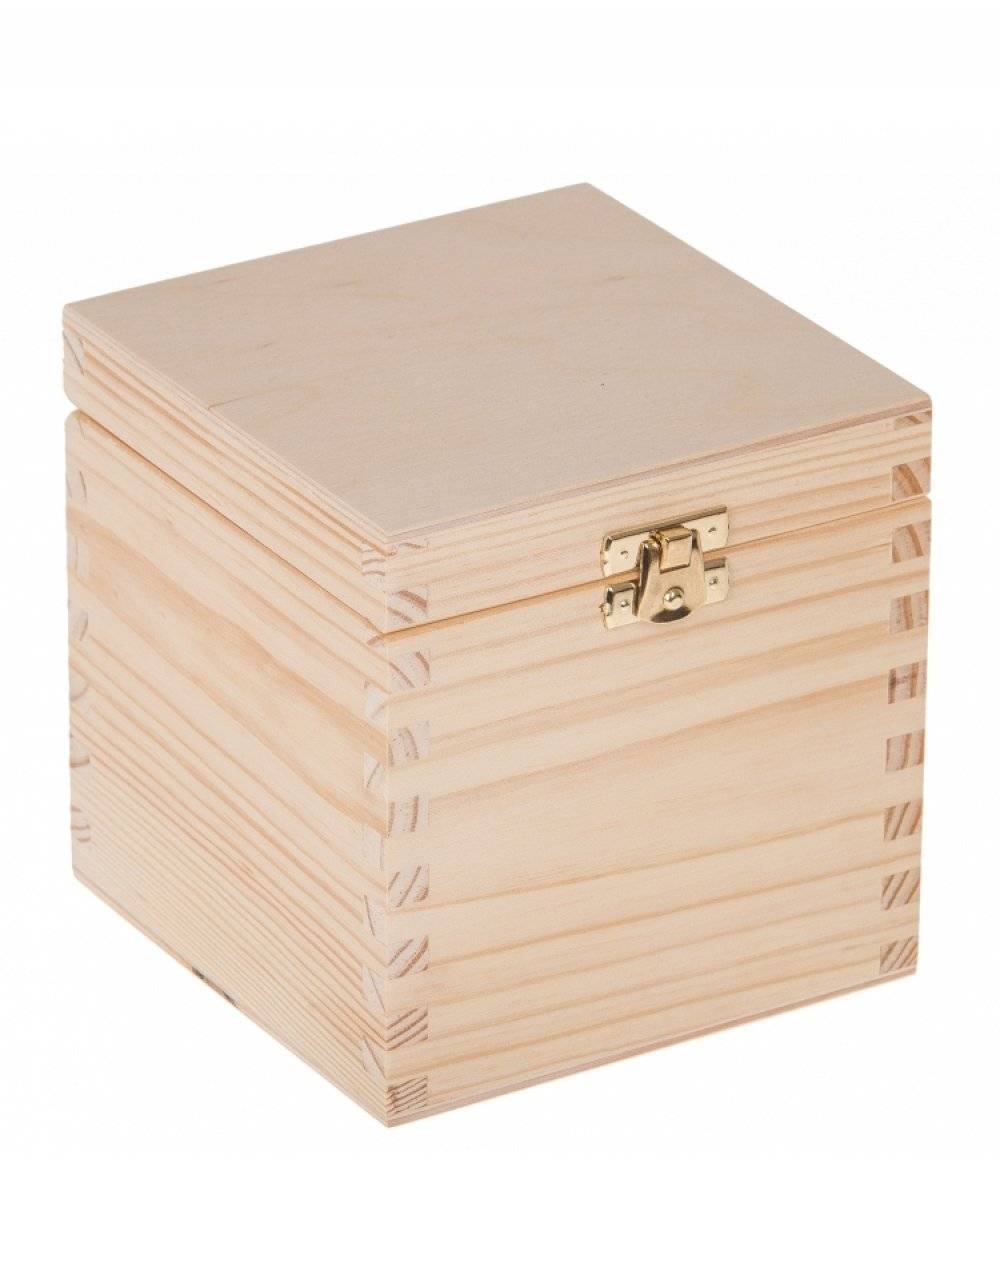 Přírodní dřevěná dárková krabička 13x13x13,5 cm